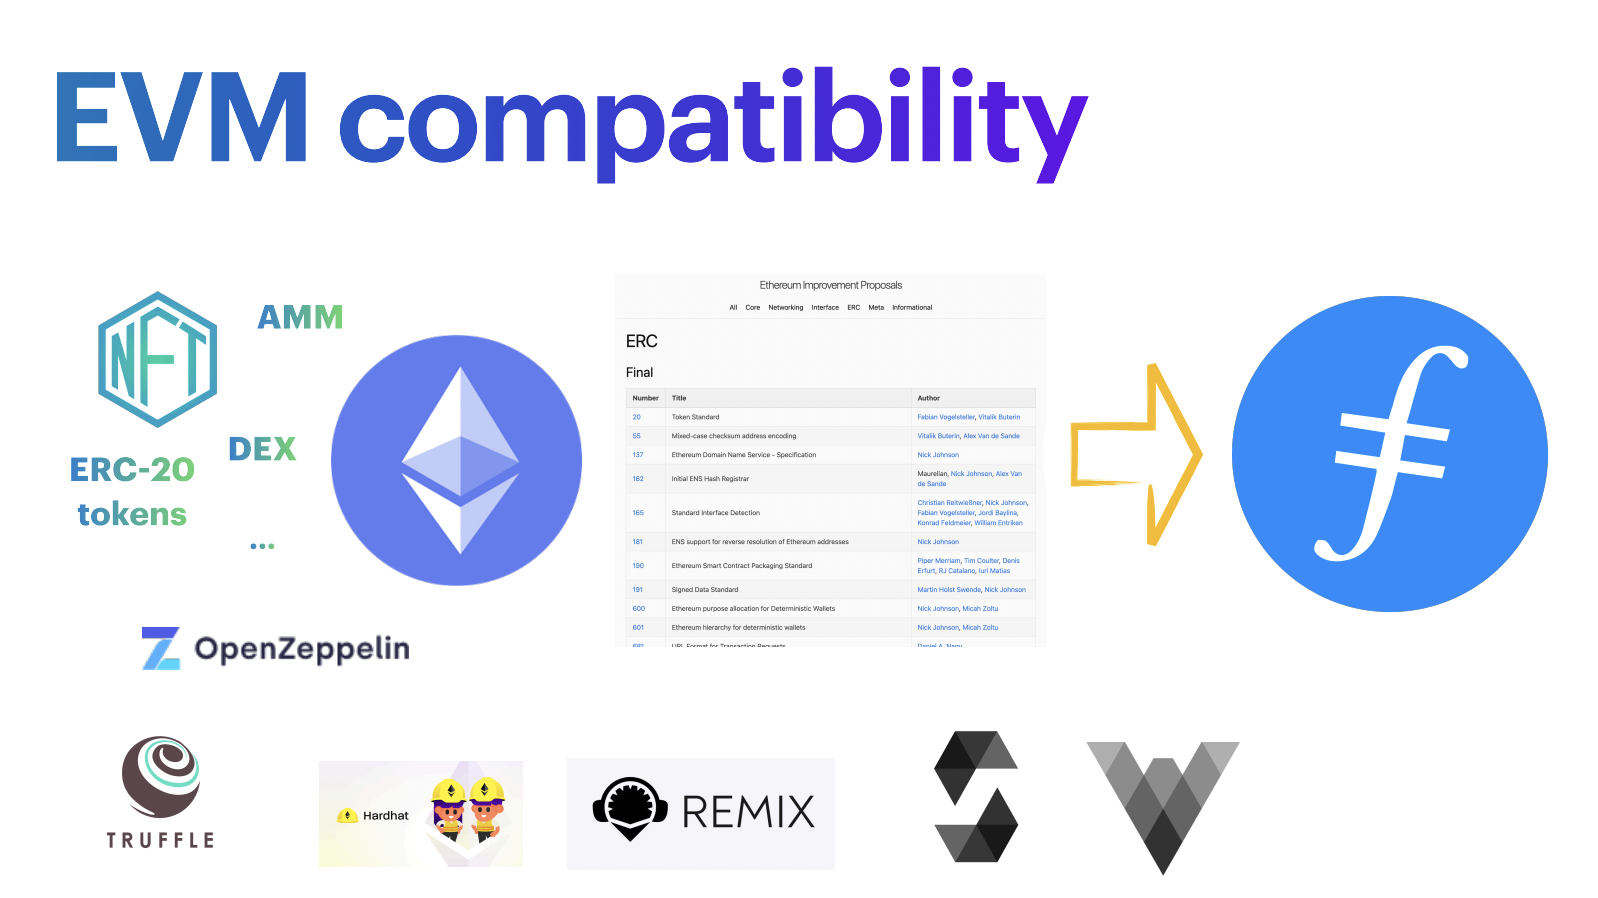 Filecoin EVM compatibility